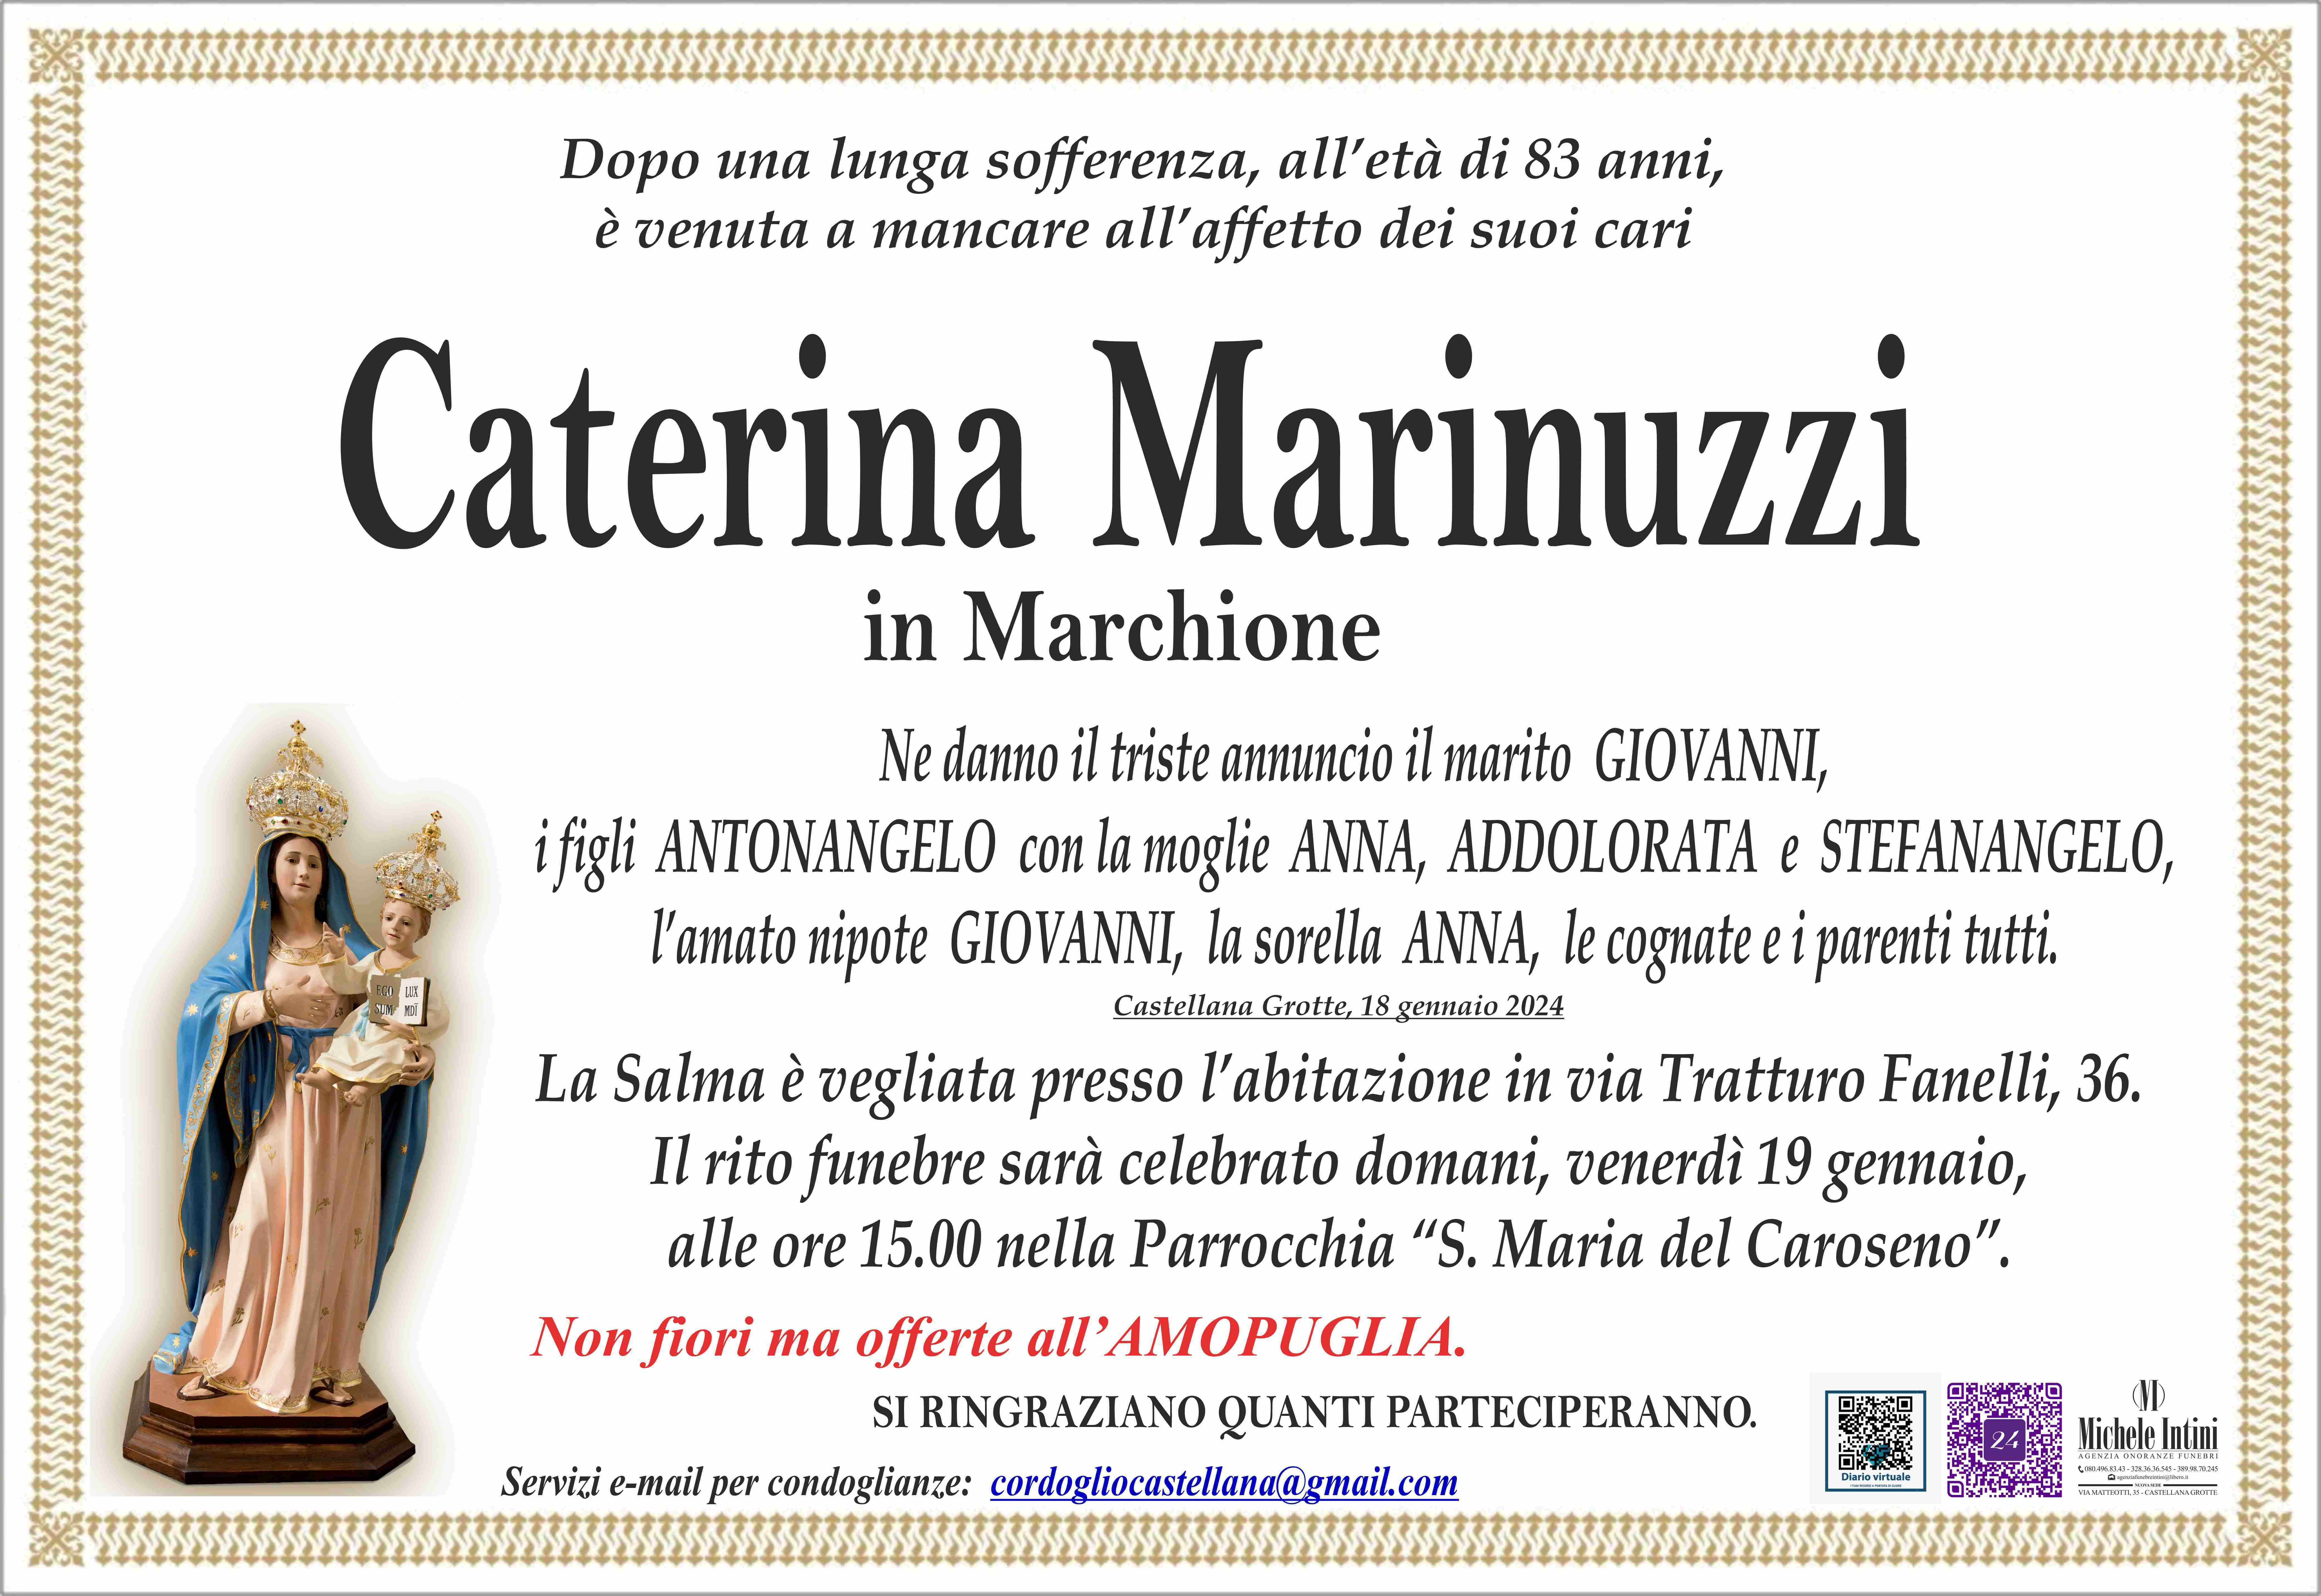 Caterina Marinuzzi